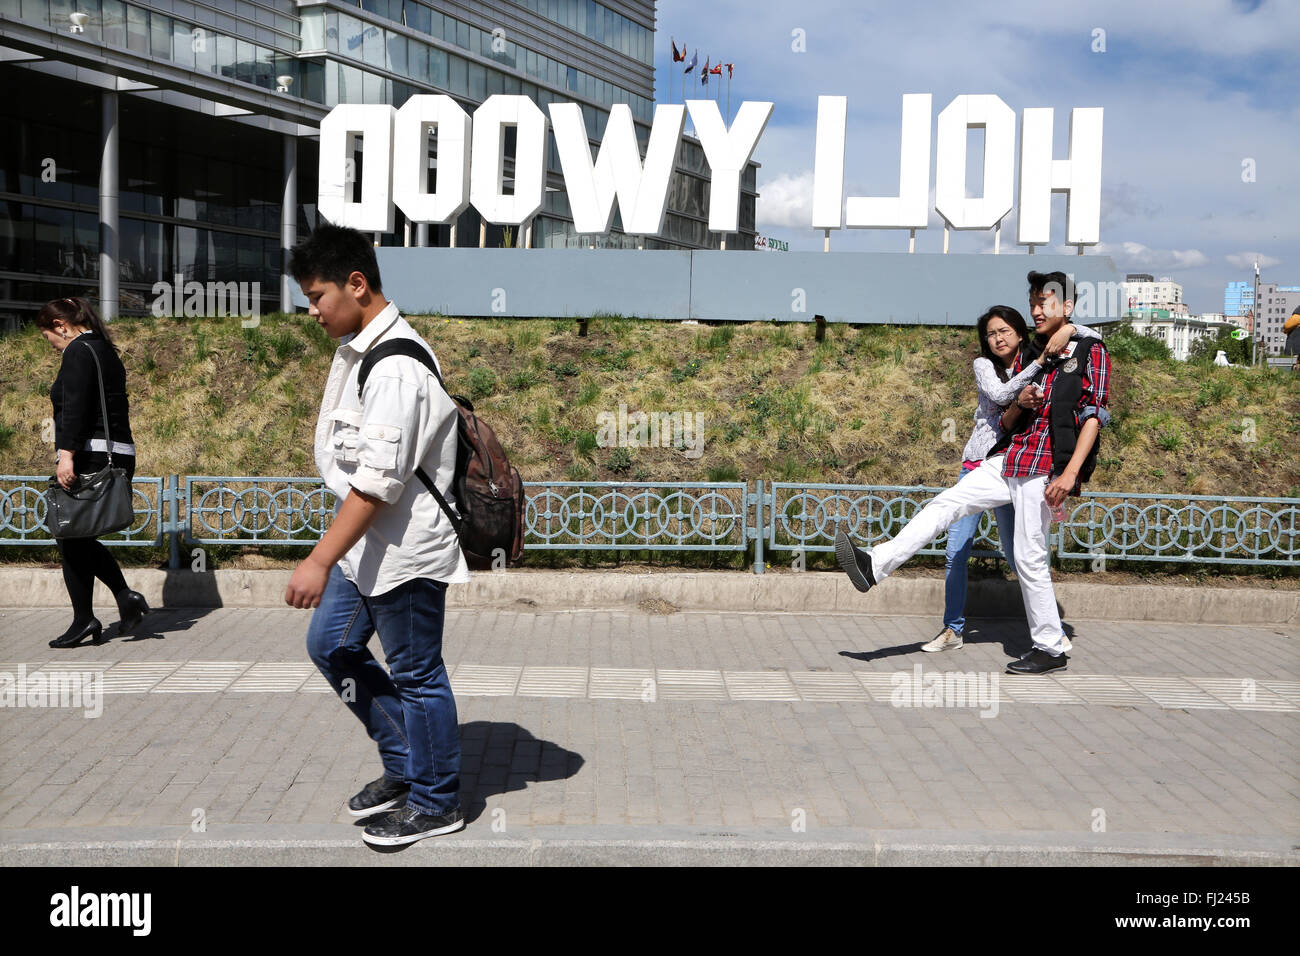 Le persone camminare per le strade di Ulanbataar con enormi lettere 'Hollywood' Foto Stock